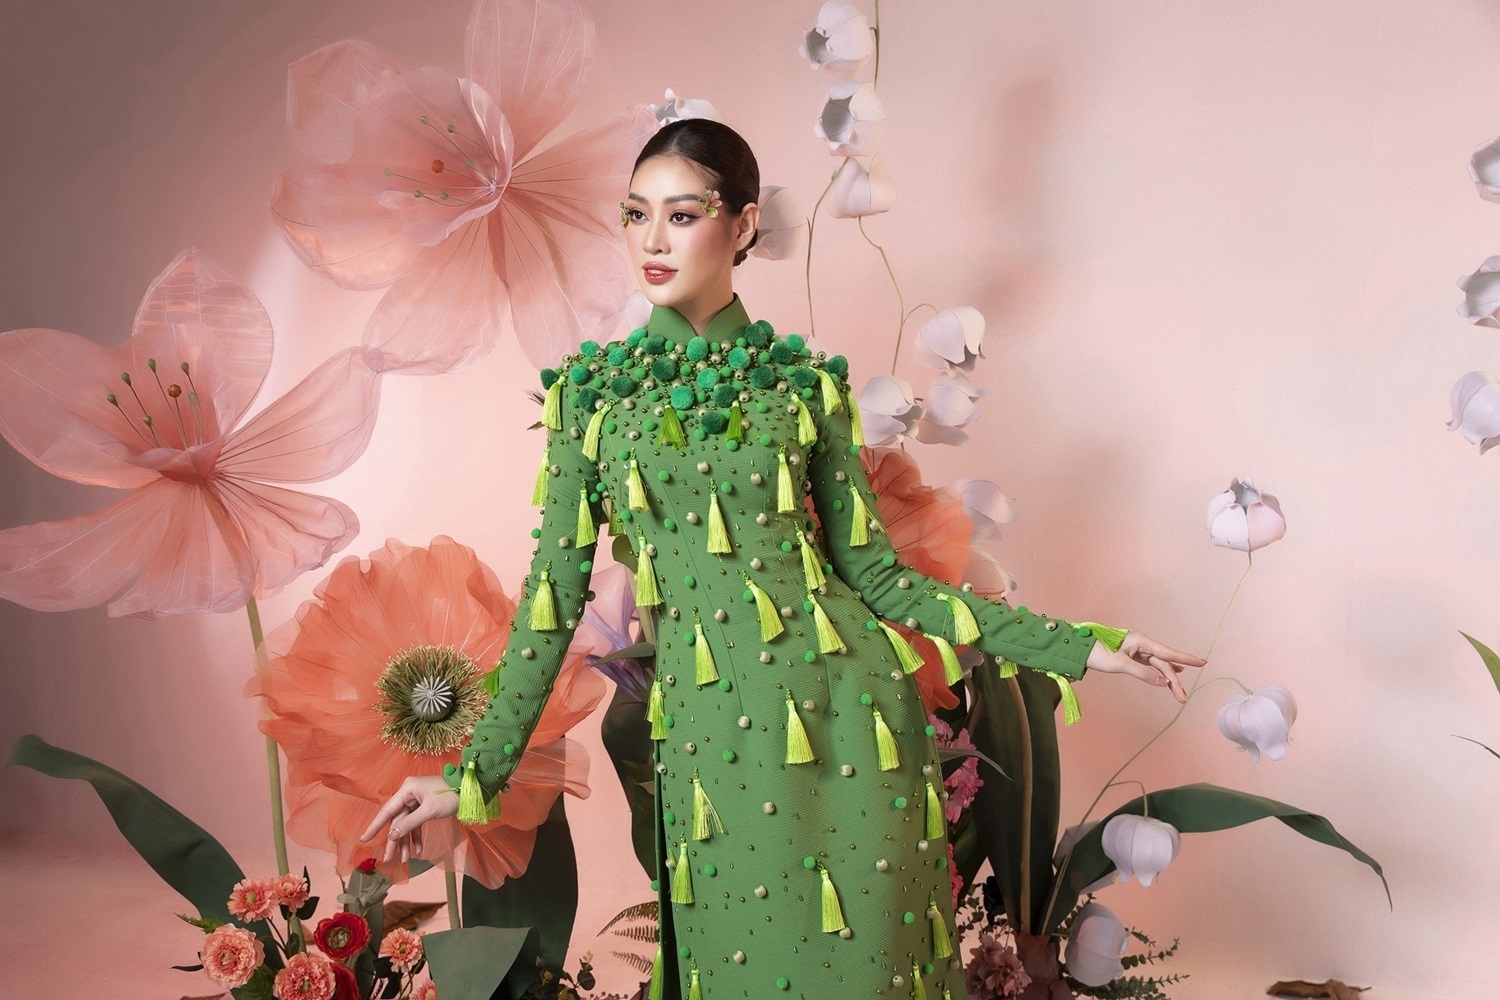 Hoa hậu Khánh Vân không đặt nặng cát sê khi diễn áo dài cho NTK Minh Châu - Ảnh 4.